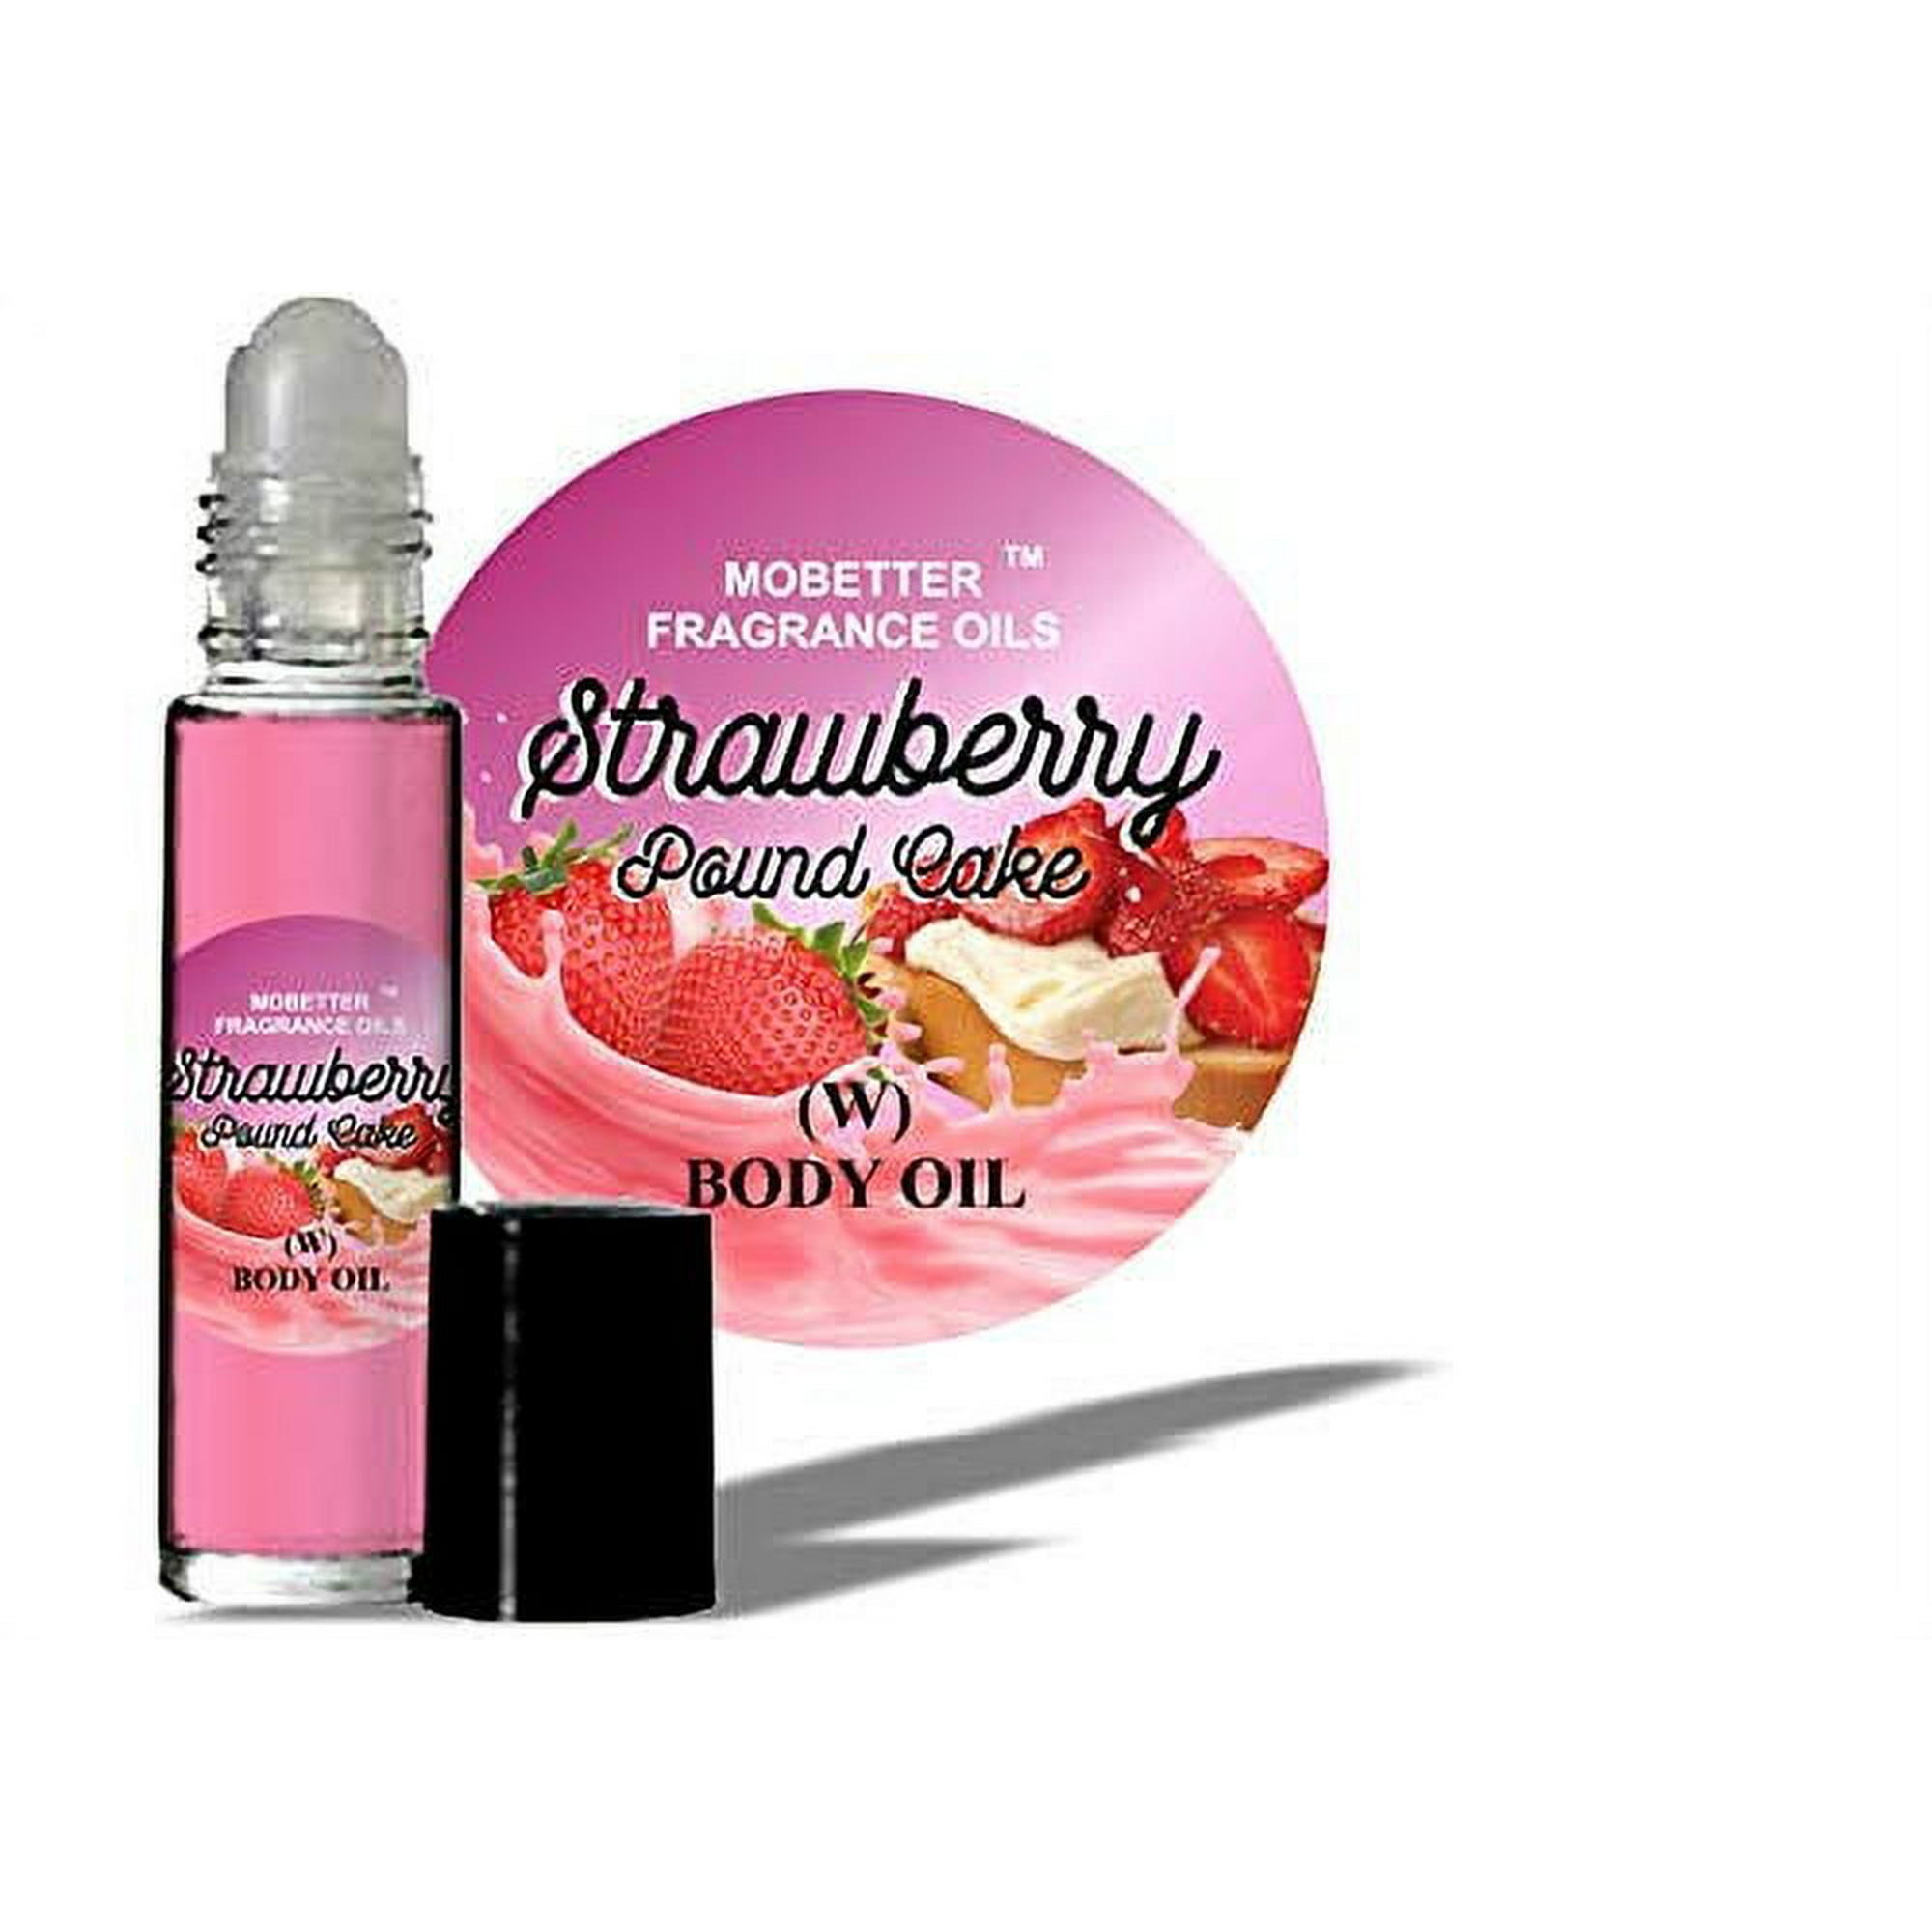 Strawberry Pound Cake Perfume body oil 